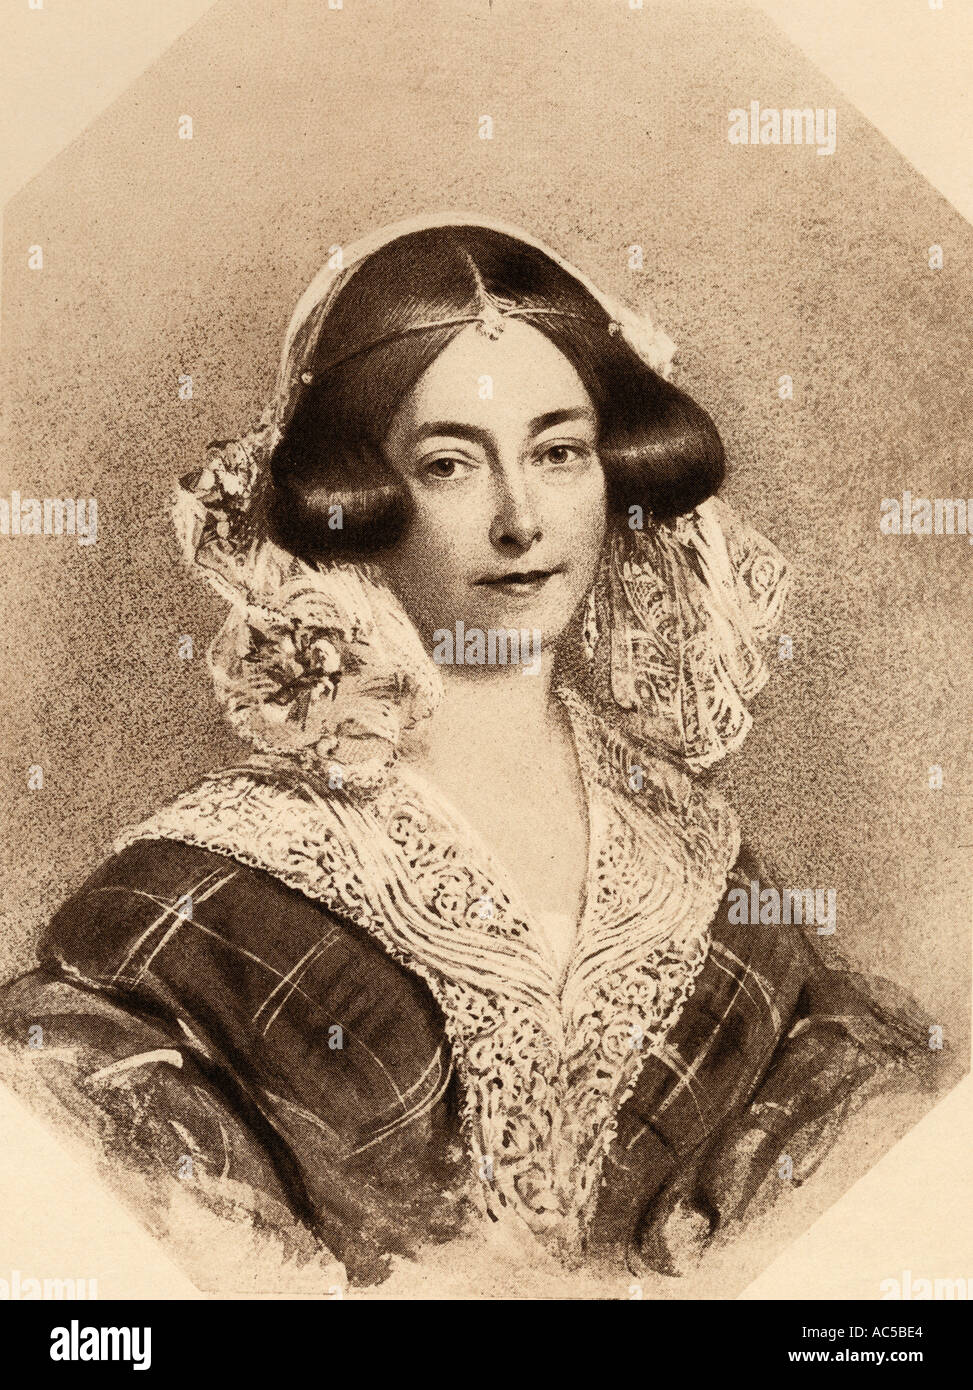 Prinzessin Mary Louise Victoria, Herzogin von Kent und Strathearn, 1786-1861. Mutter von Königin Victoria, von einem Porträt von Stein. Stockfoto